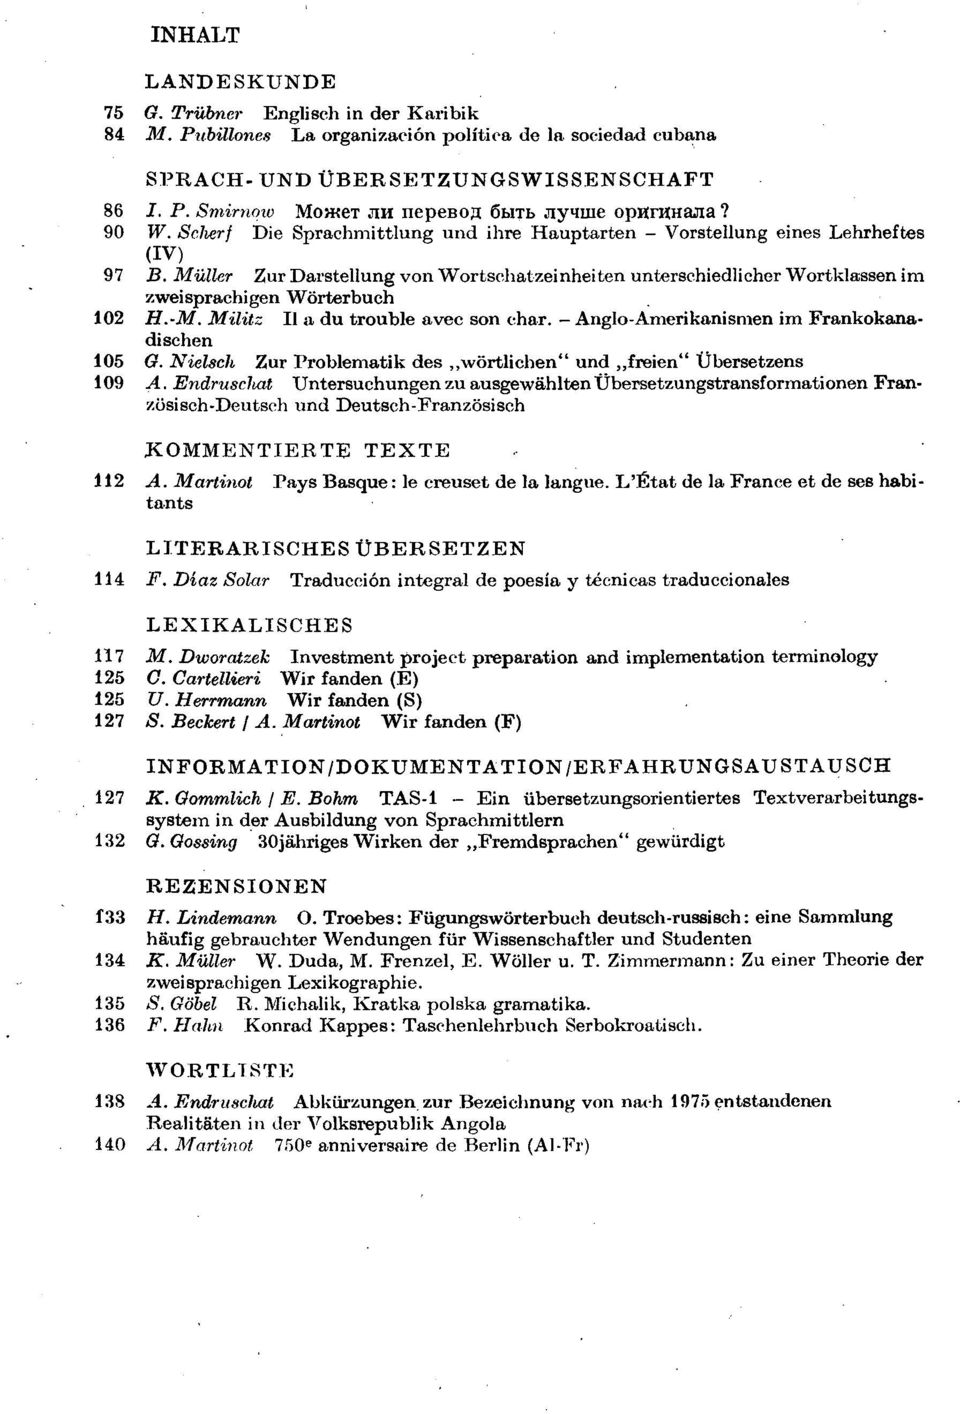 Muller Zur Darstellung von Wortschatzeinheiten unterschiedlicher Wortklassen im zweisprachigen Wörterbuch 102 H. - M. Militz II a du trouble avec son char.